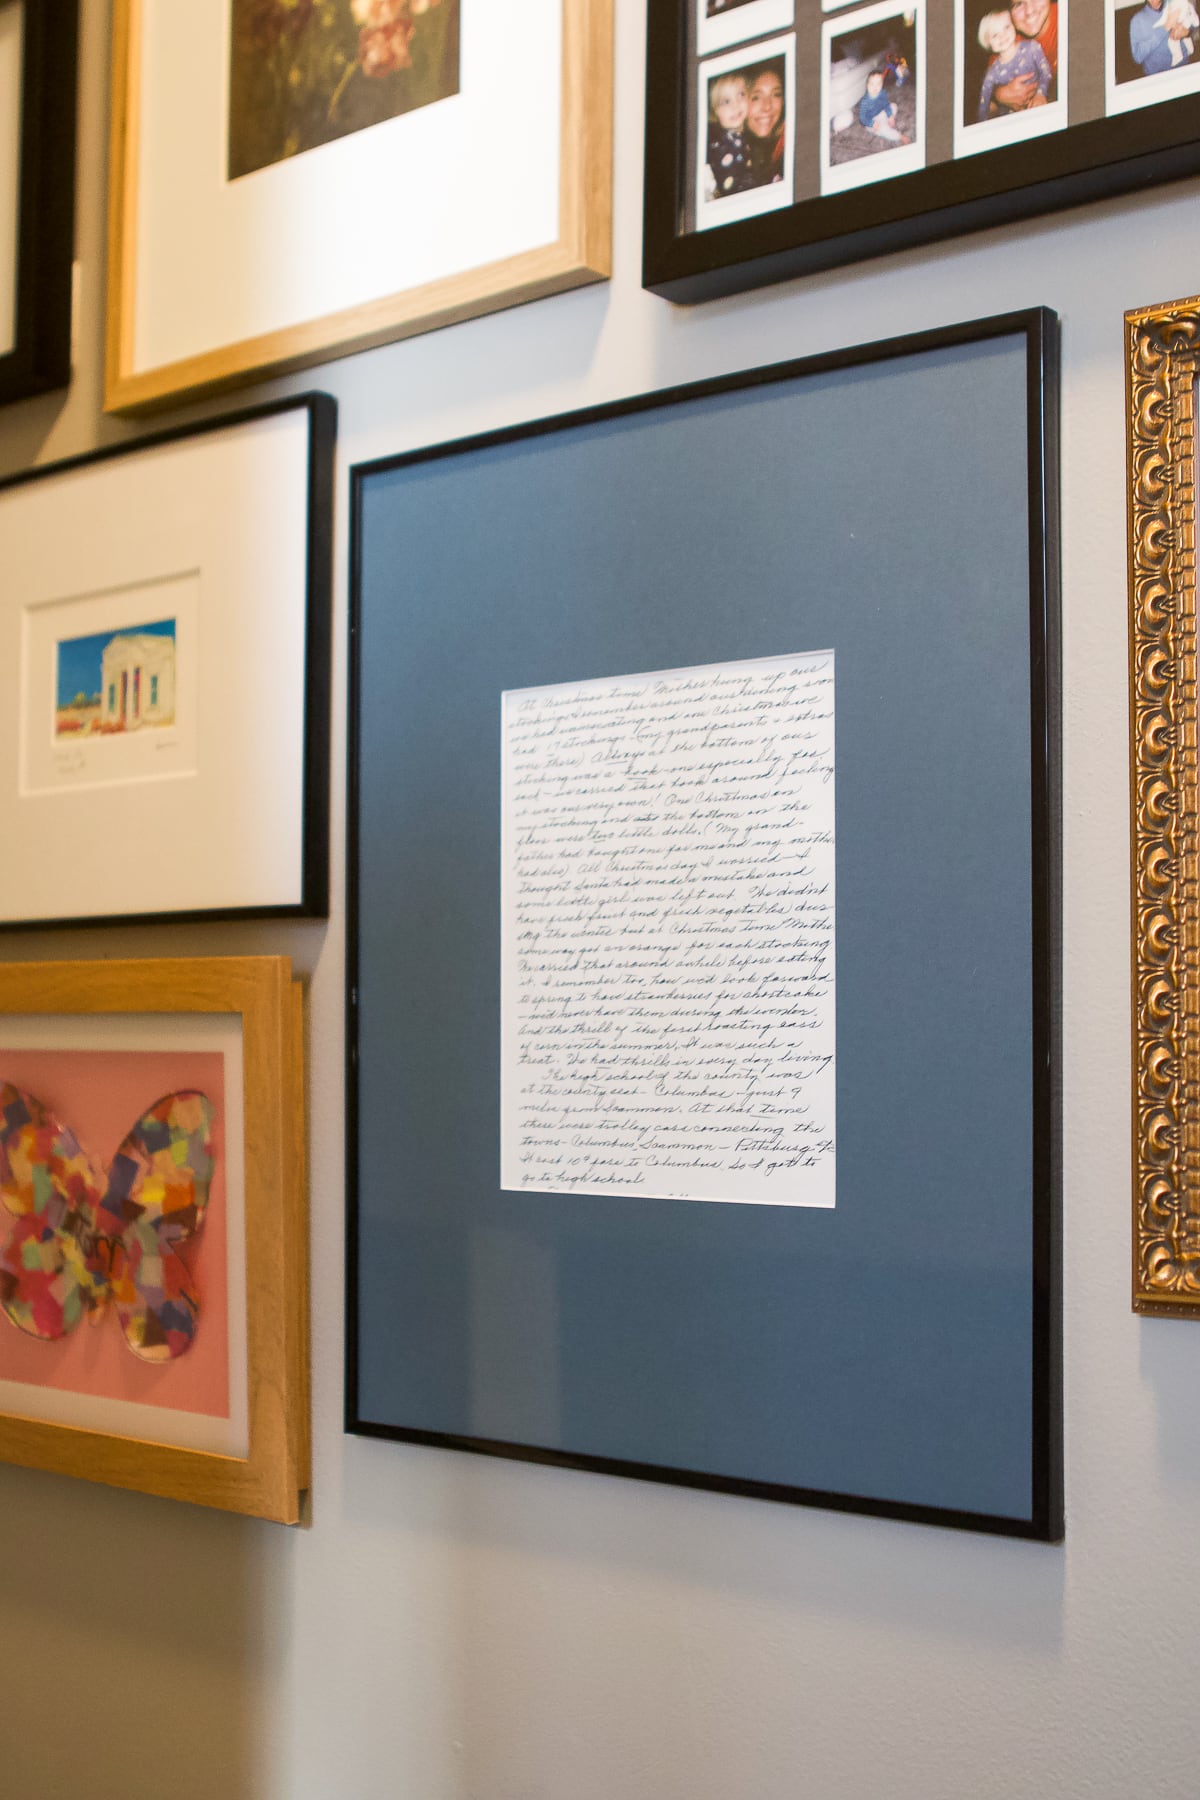 Grama's letter framed in a black large frame